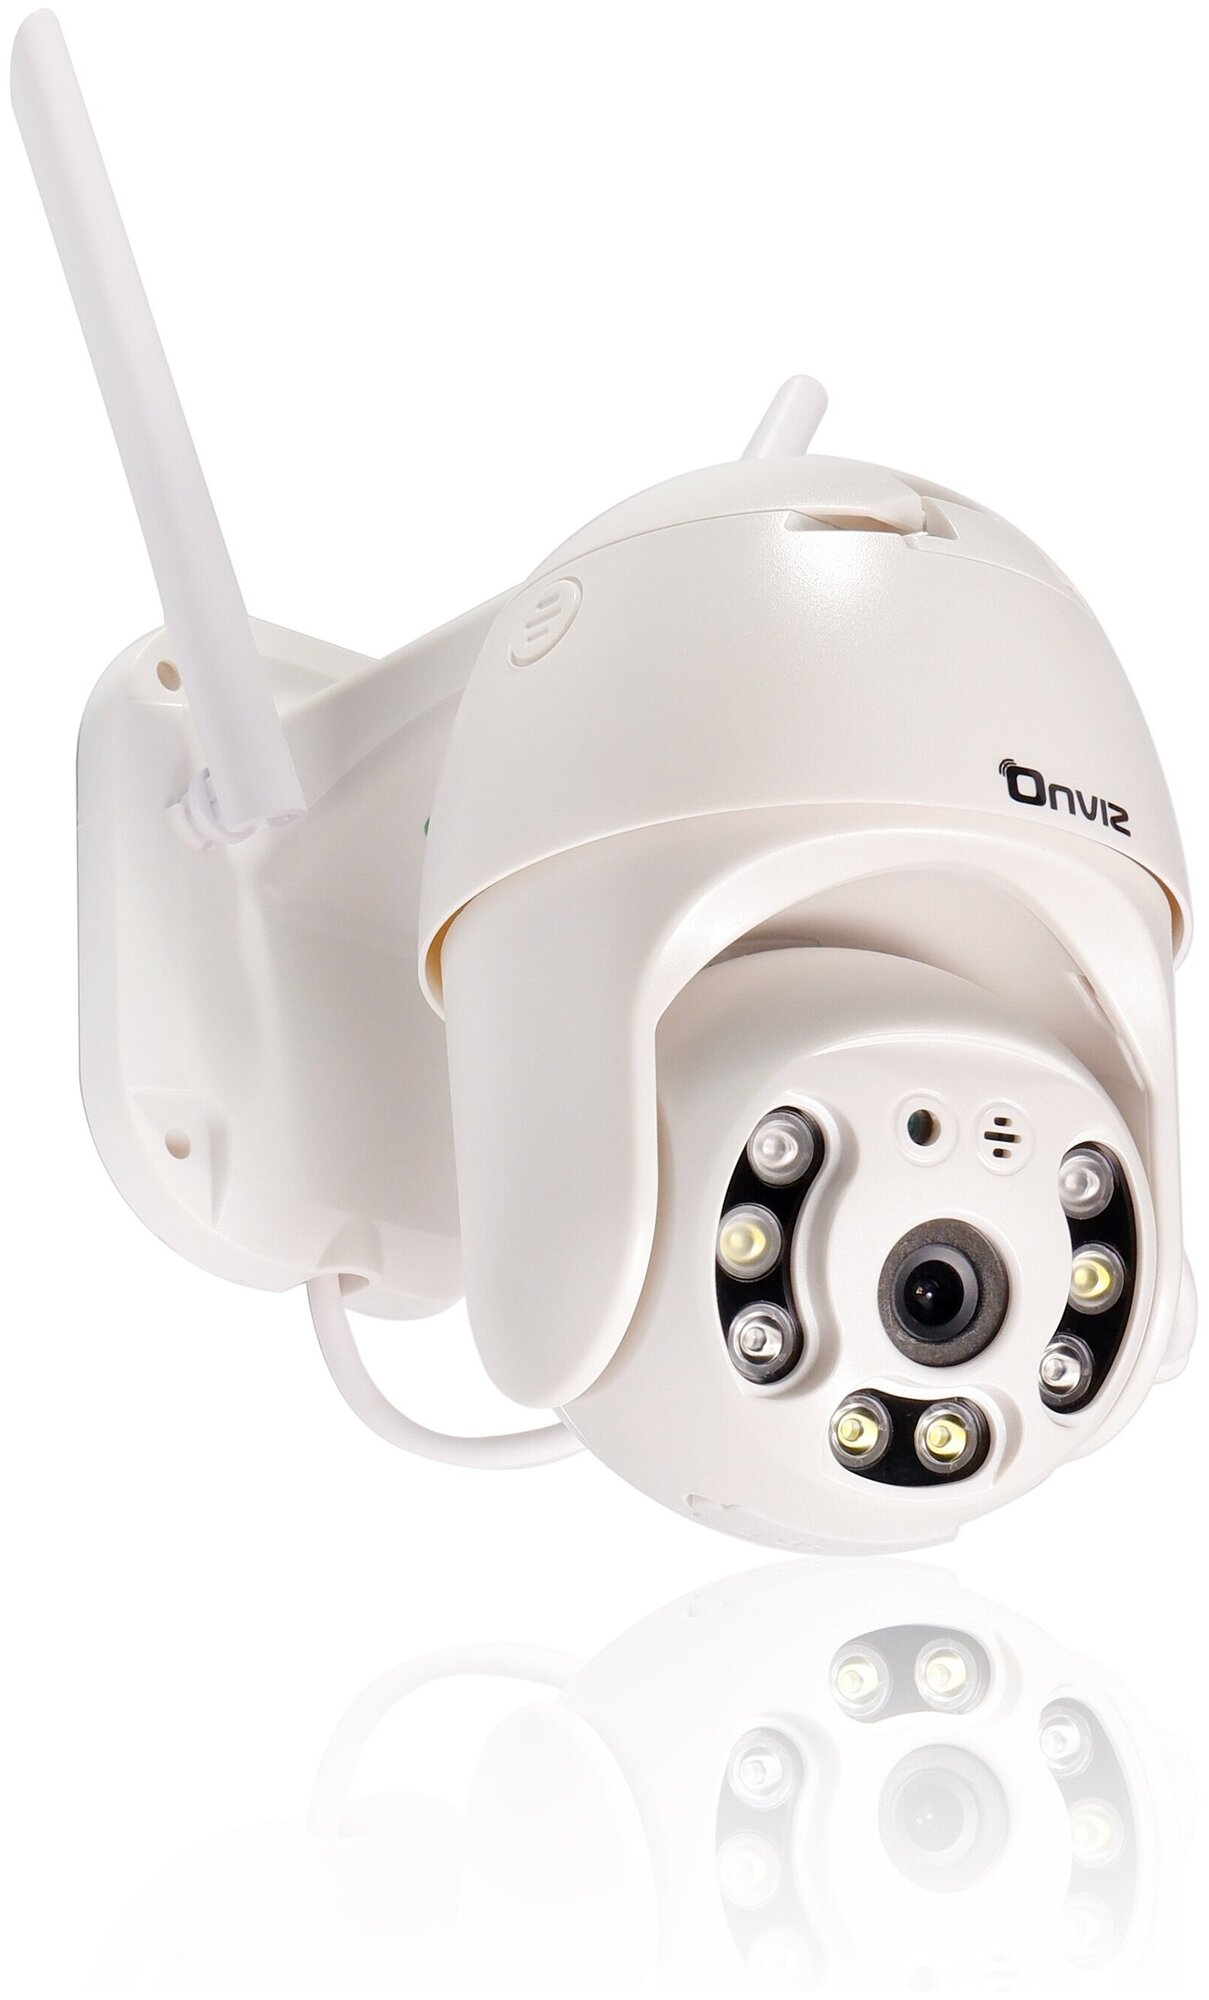 Купольная поворотная IP WiFi камера видеонаблюдения Onviz U70, беспроводная уличная камера для дома, для дачи